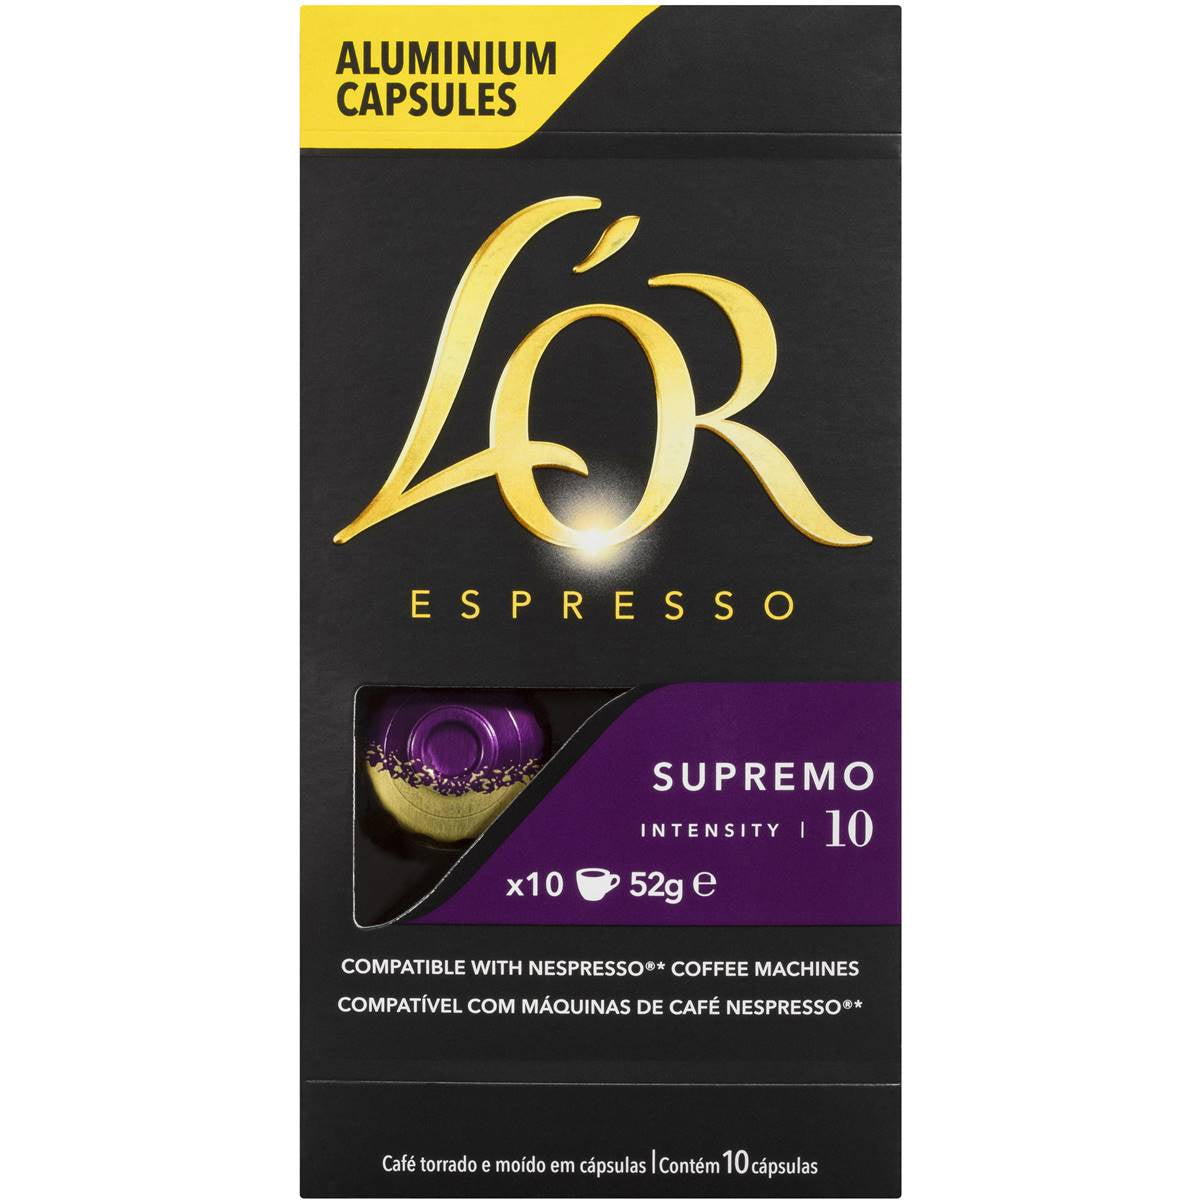 L'or Espresso Cappuccino Supremo 10 pk